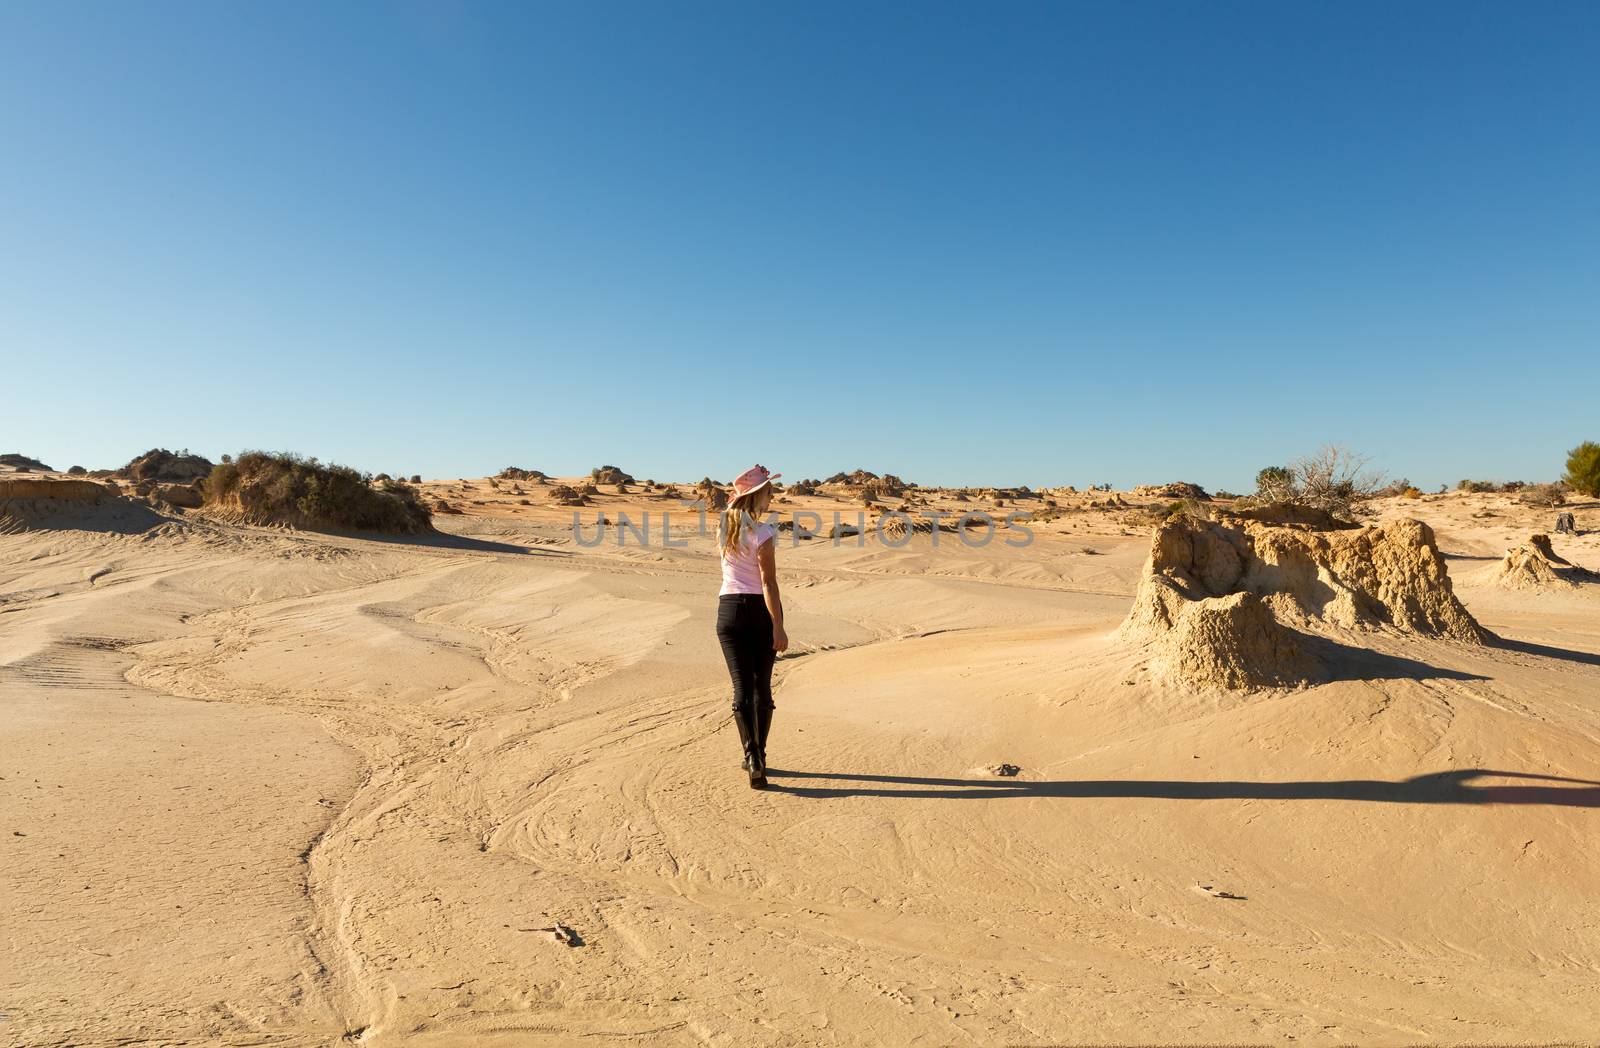 Woman walking in a desert landscape in outback Australia